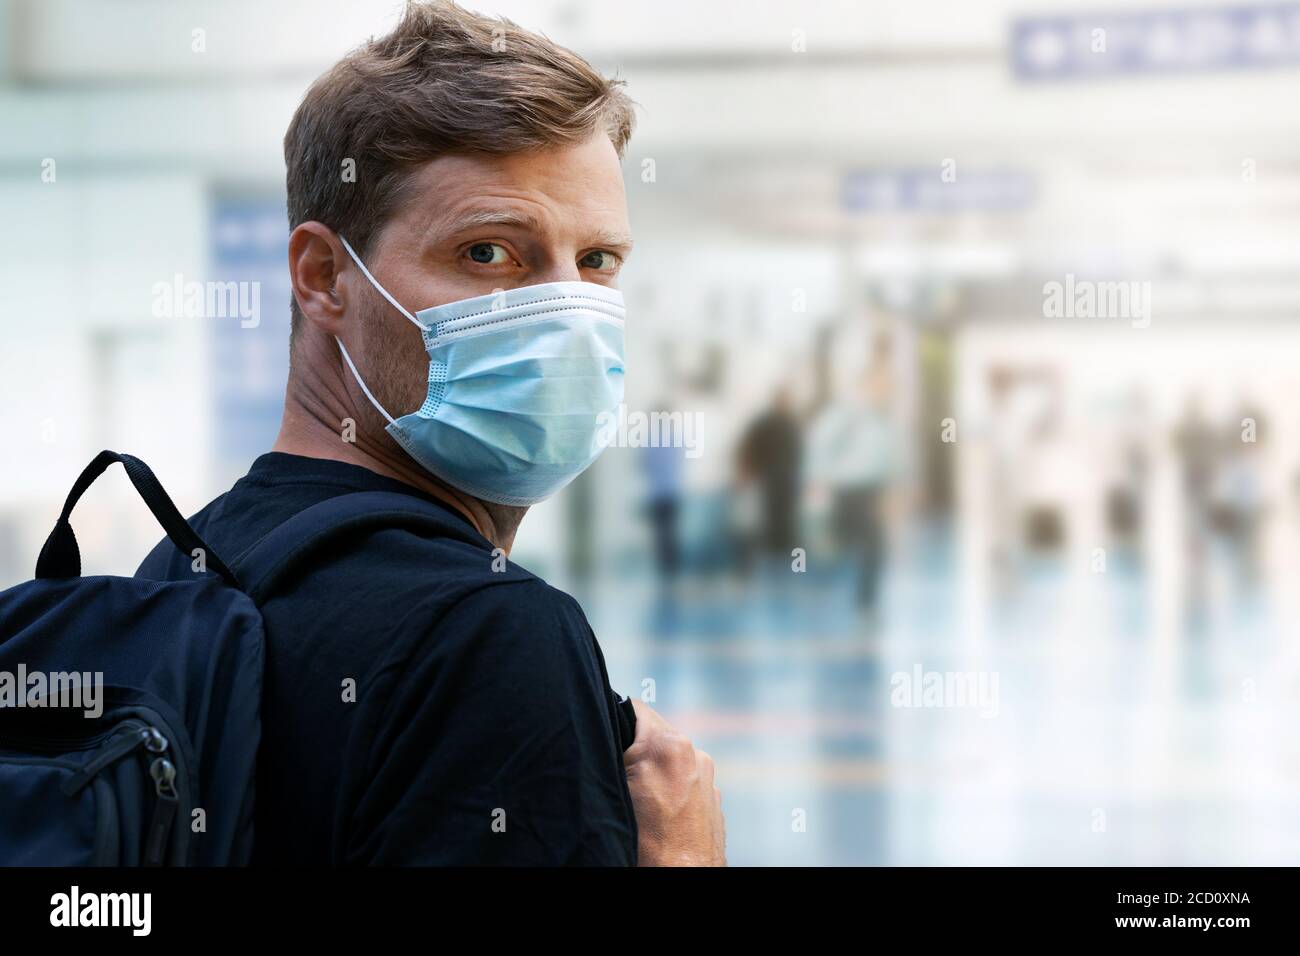 giovane uomo che indossa una maschera usa e getta al terminal dell'aeroporto durante pandemia virale Foto Stock